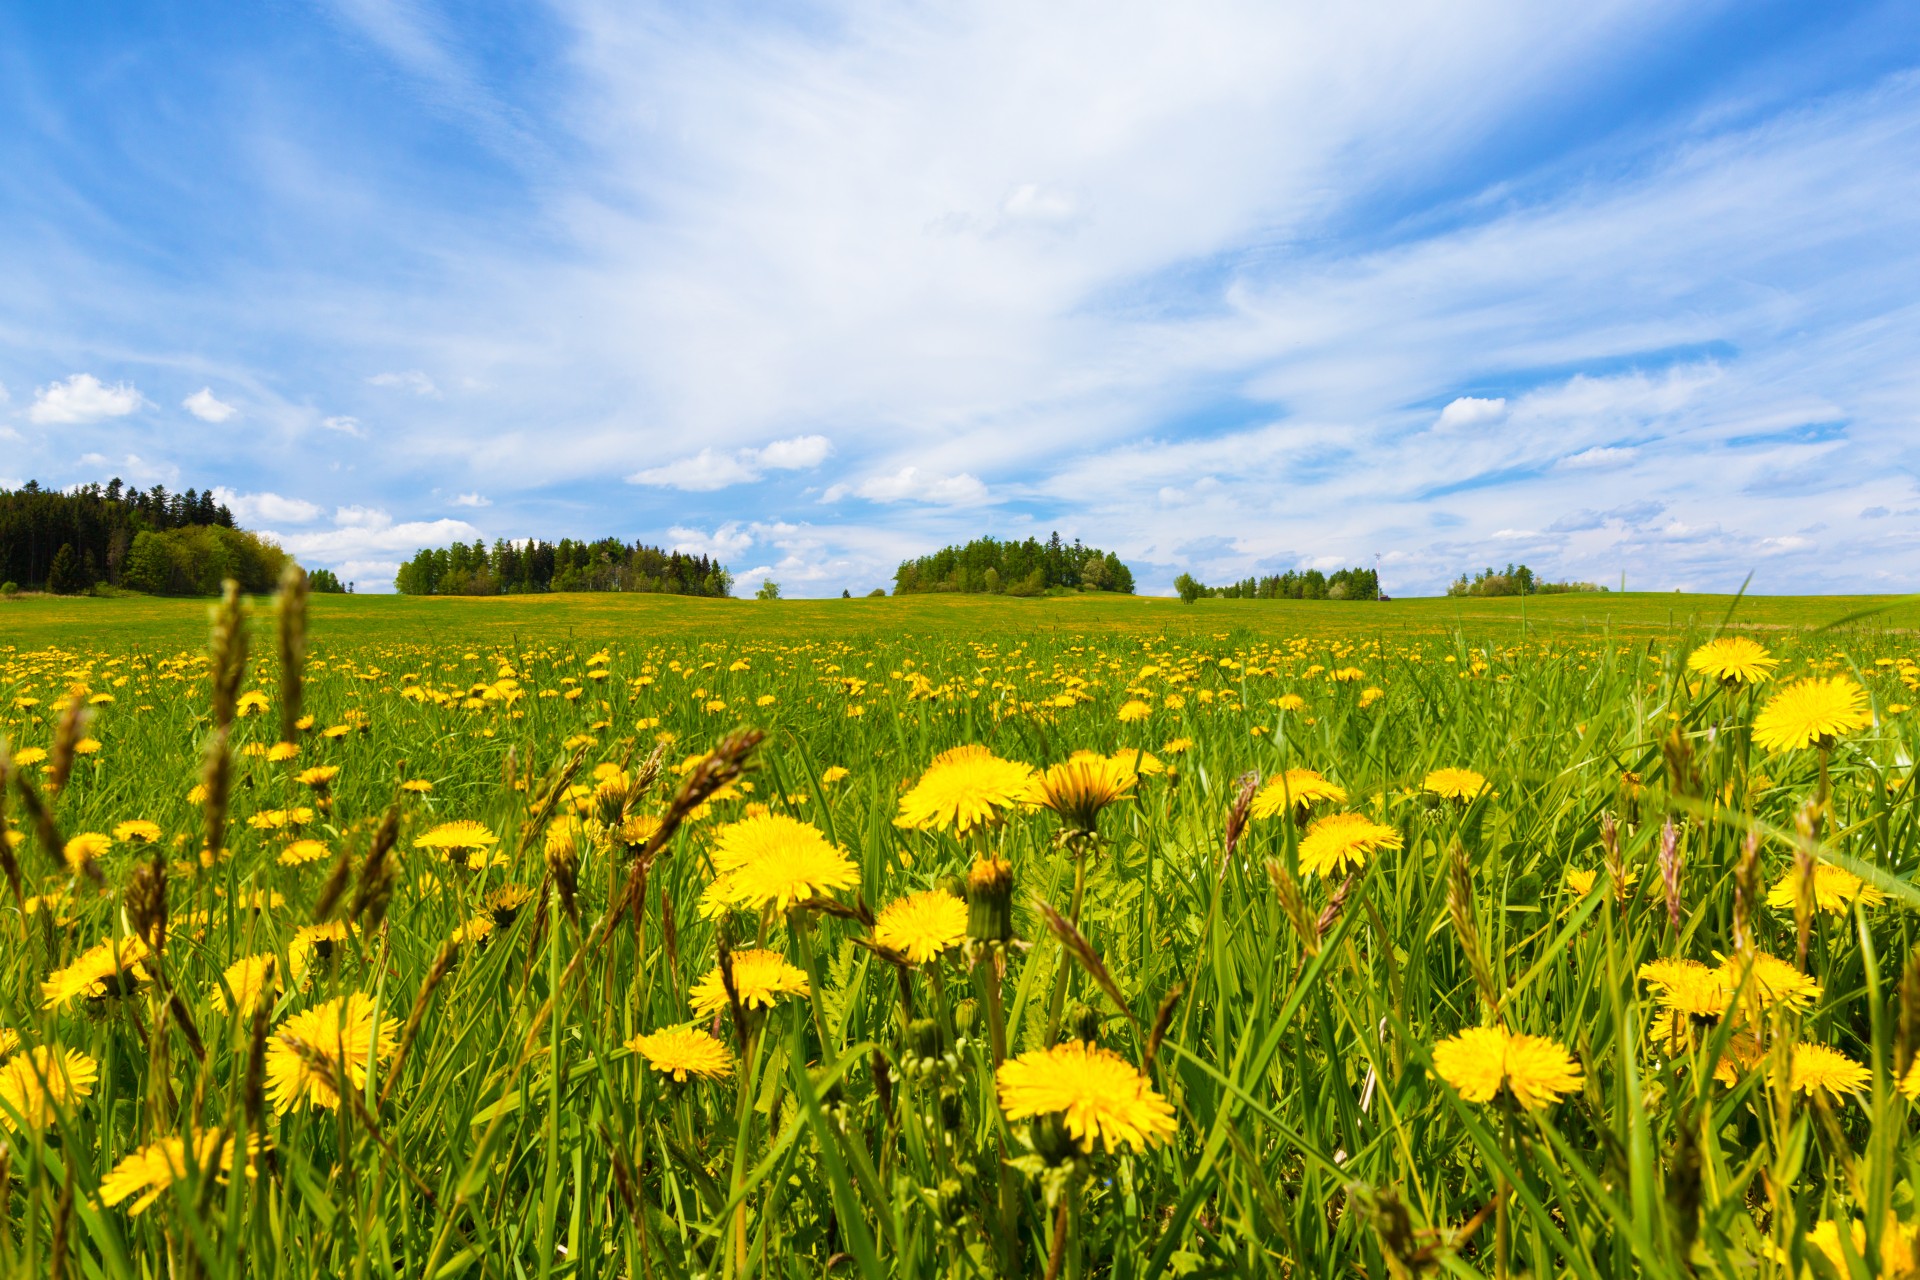 Field of dandelions under blue sky